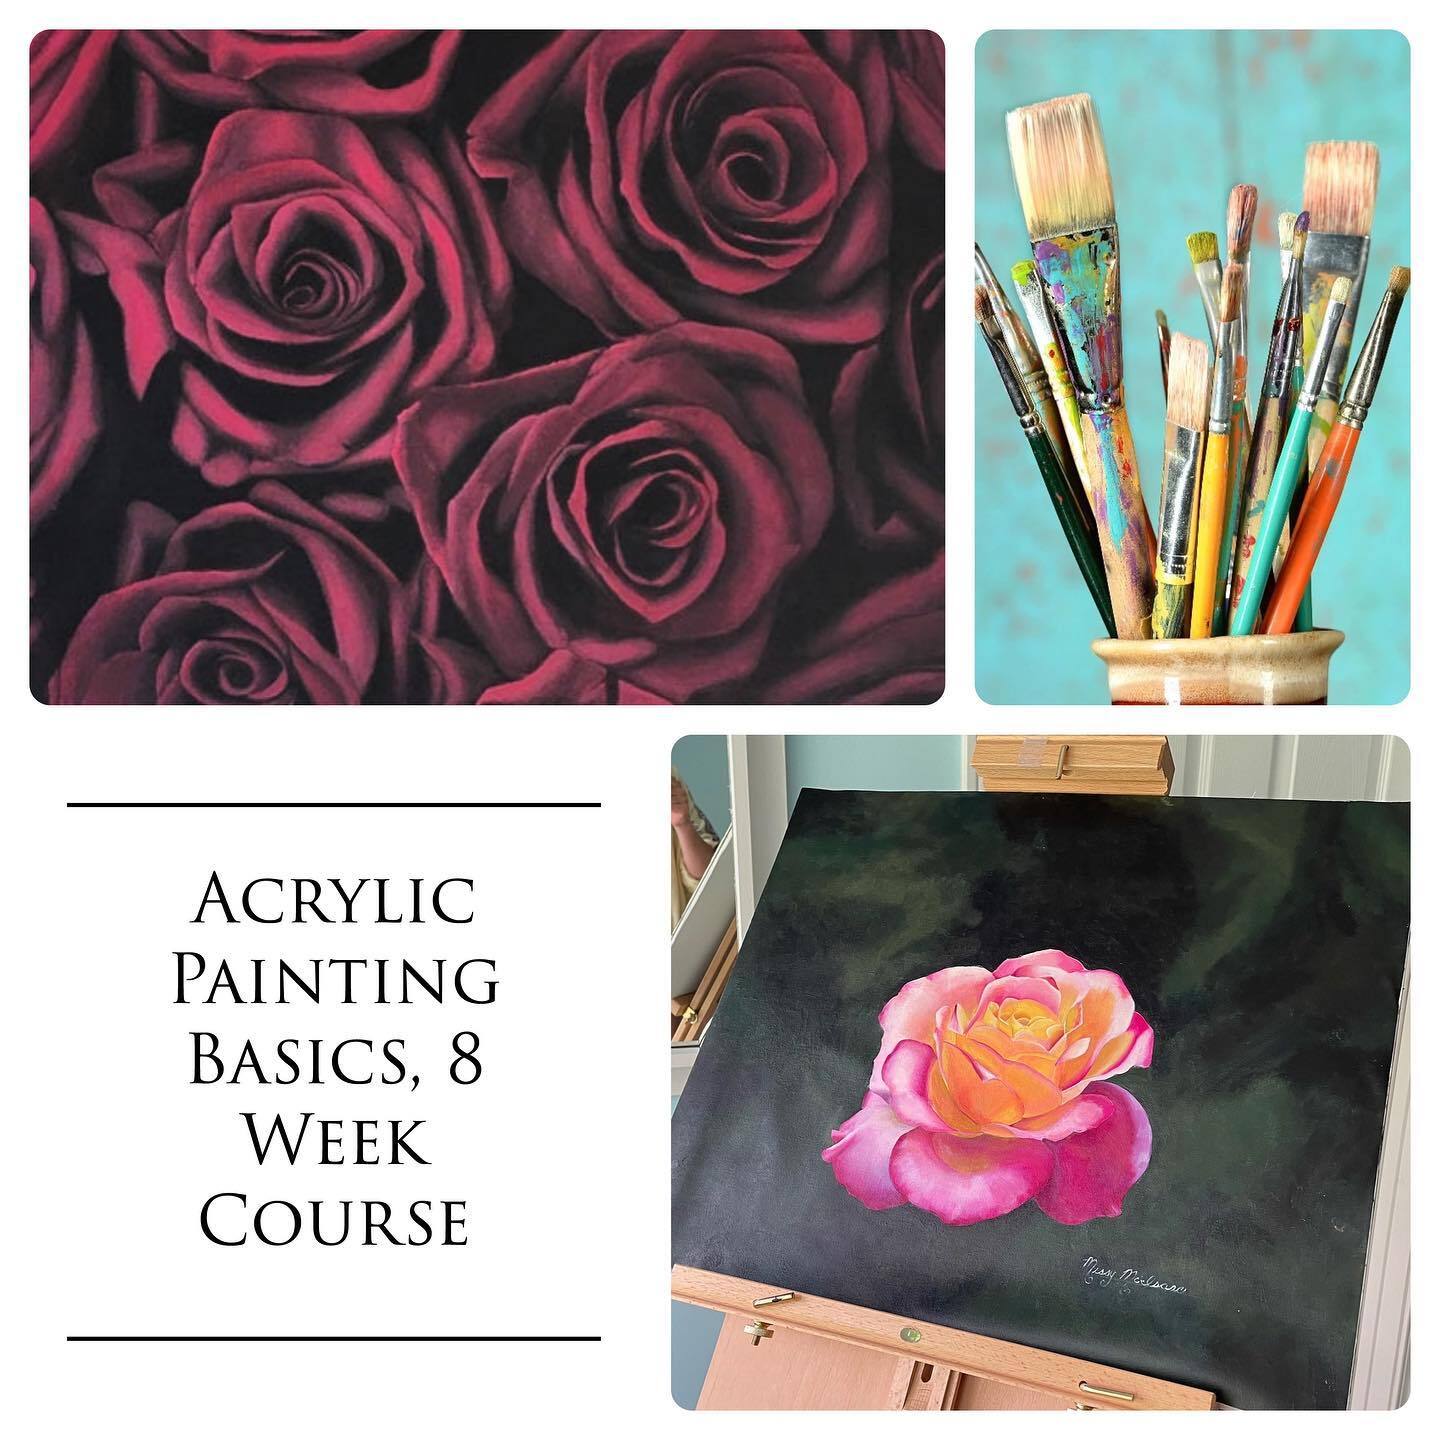 Acrylic Painting Basics Course Image